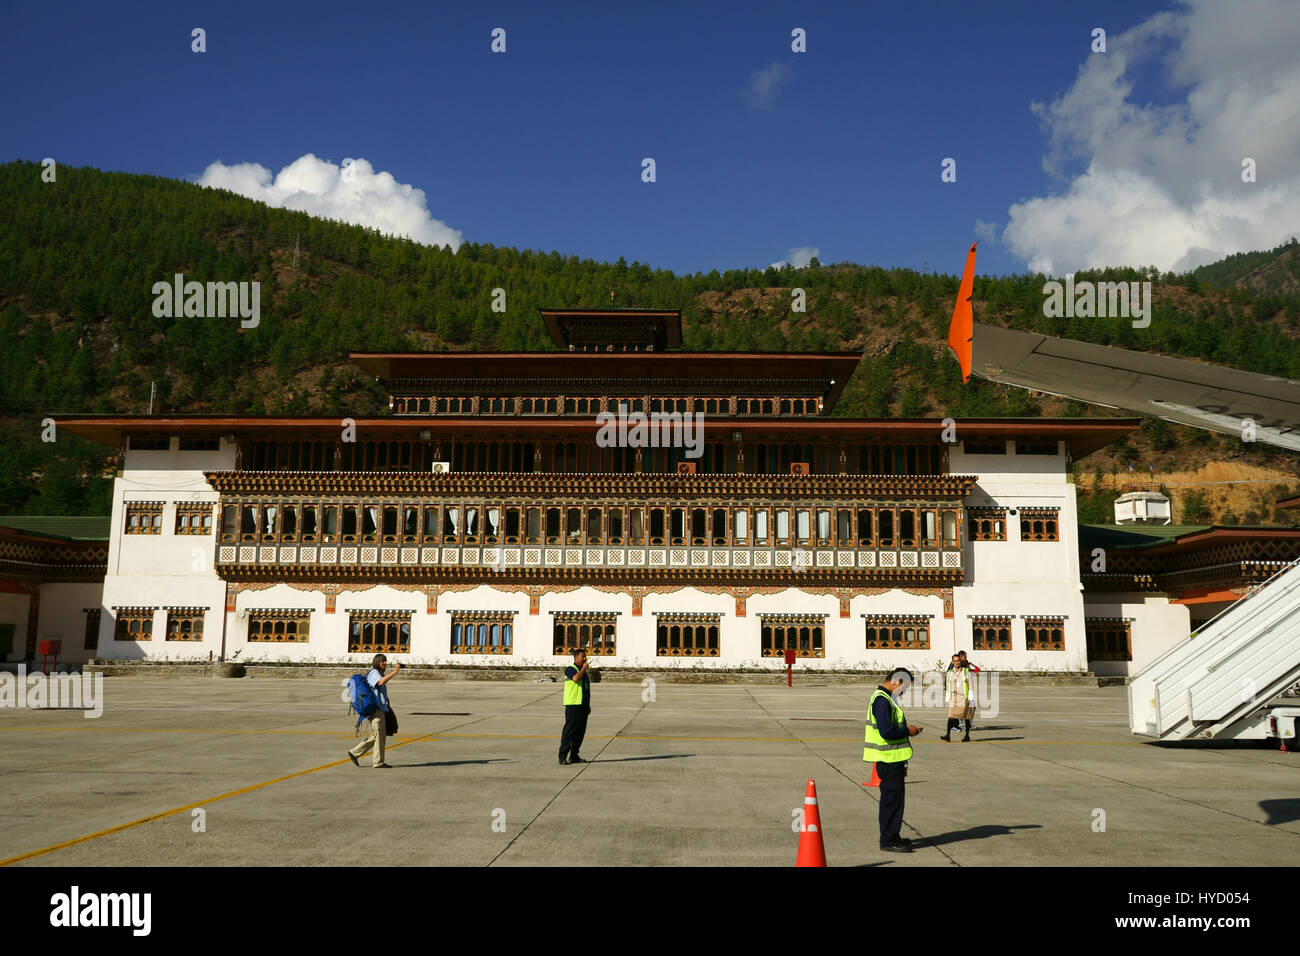 Flughafengebäude gesehen vom Rollfeld des Flughafens Paro, mit Angestellten und Menschen einsteigen Drukair Flugzeug, Bhutan Stockfoto